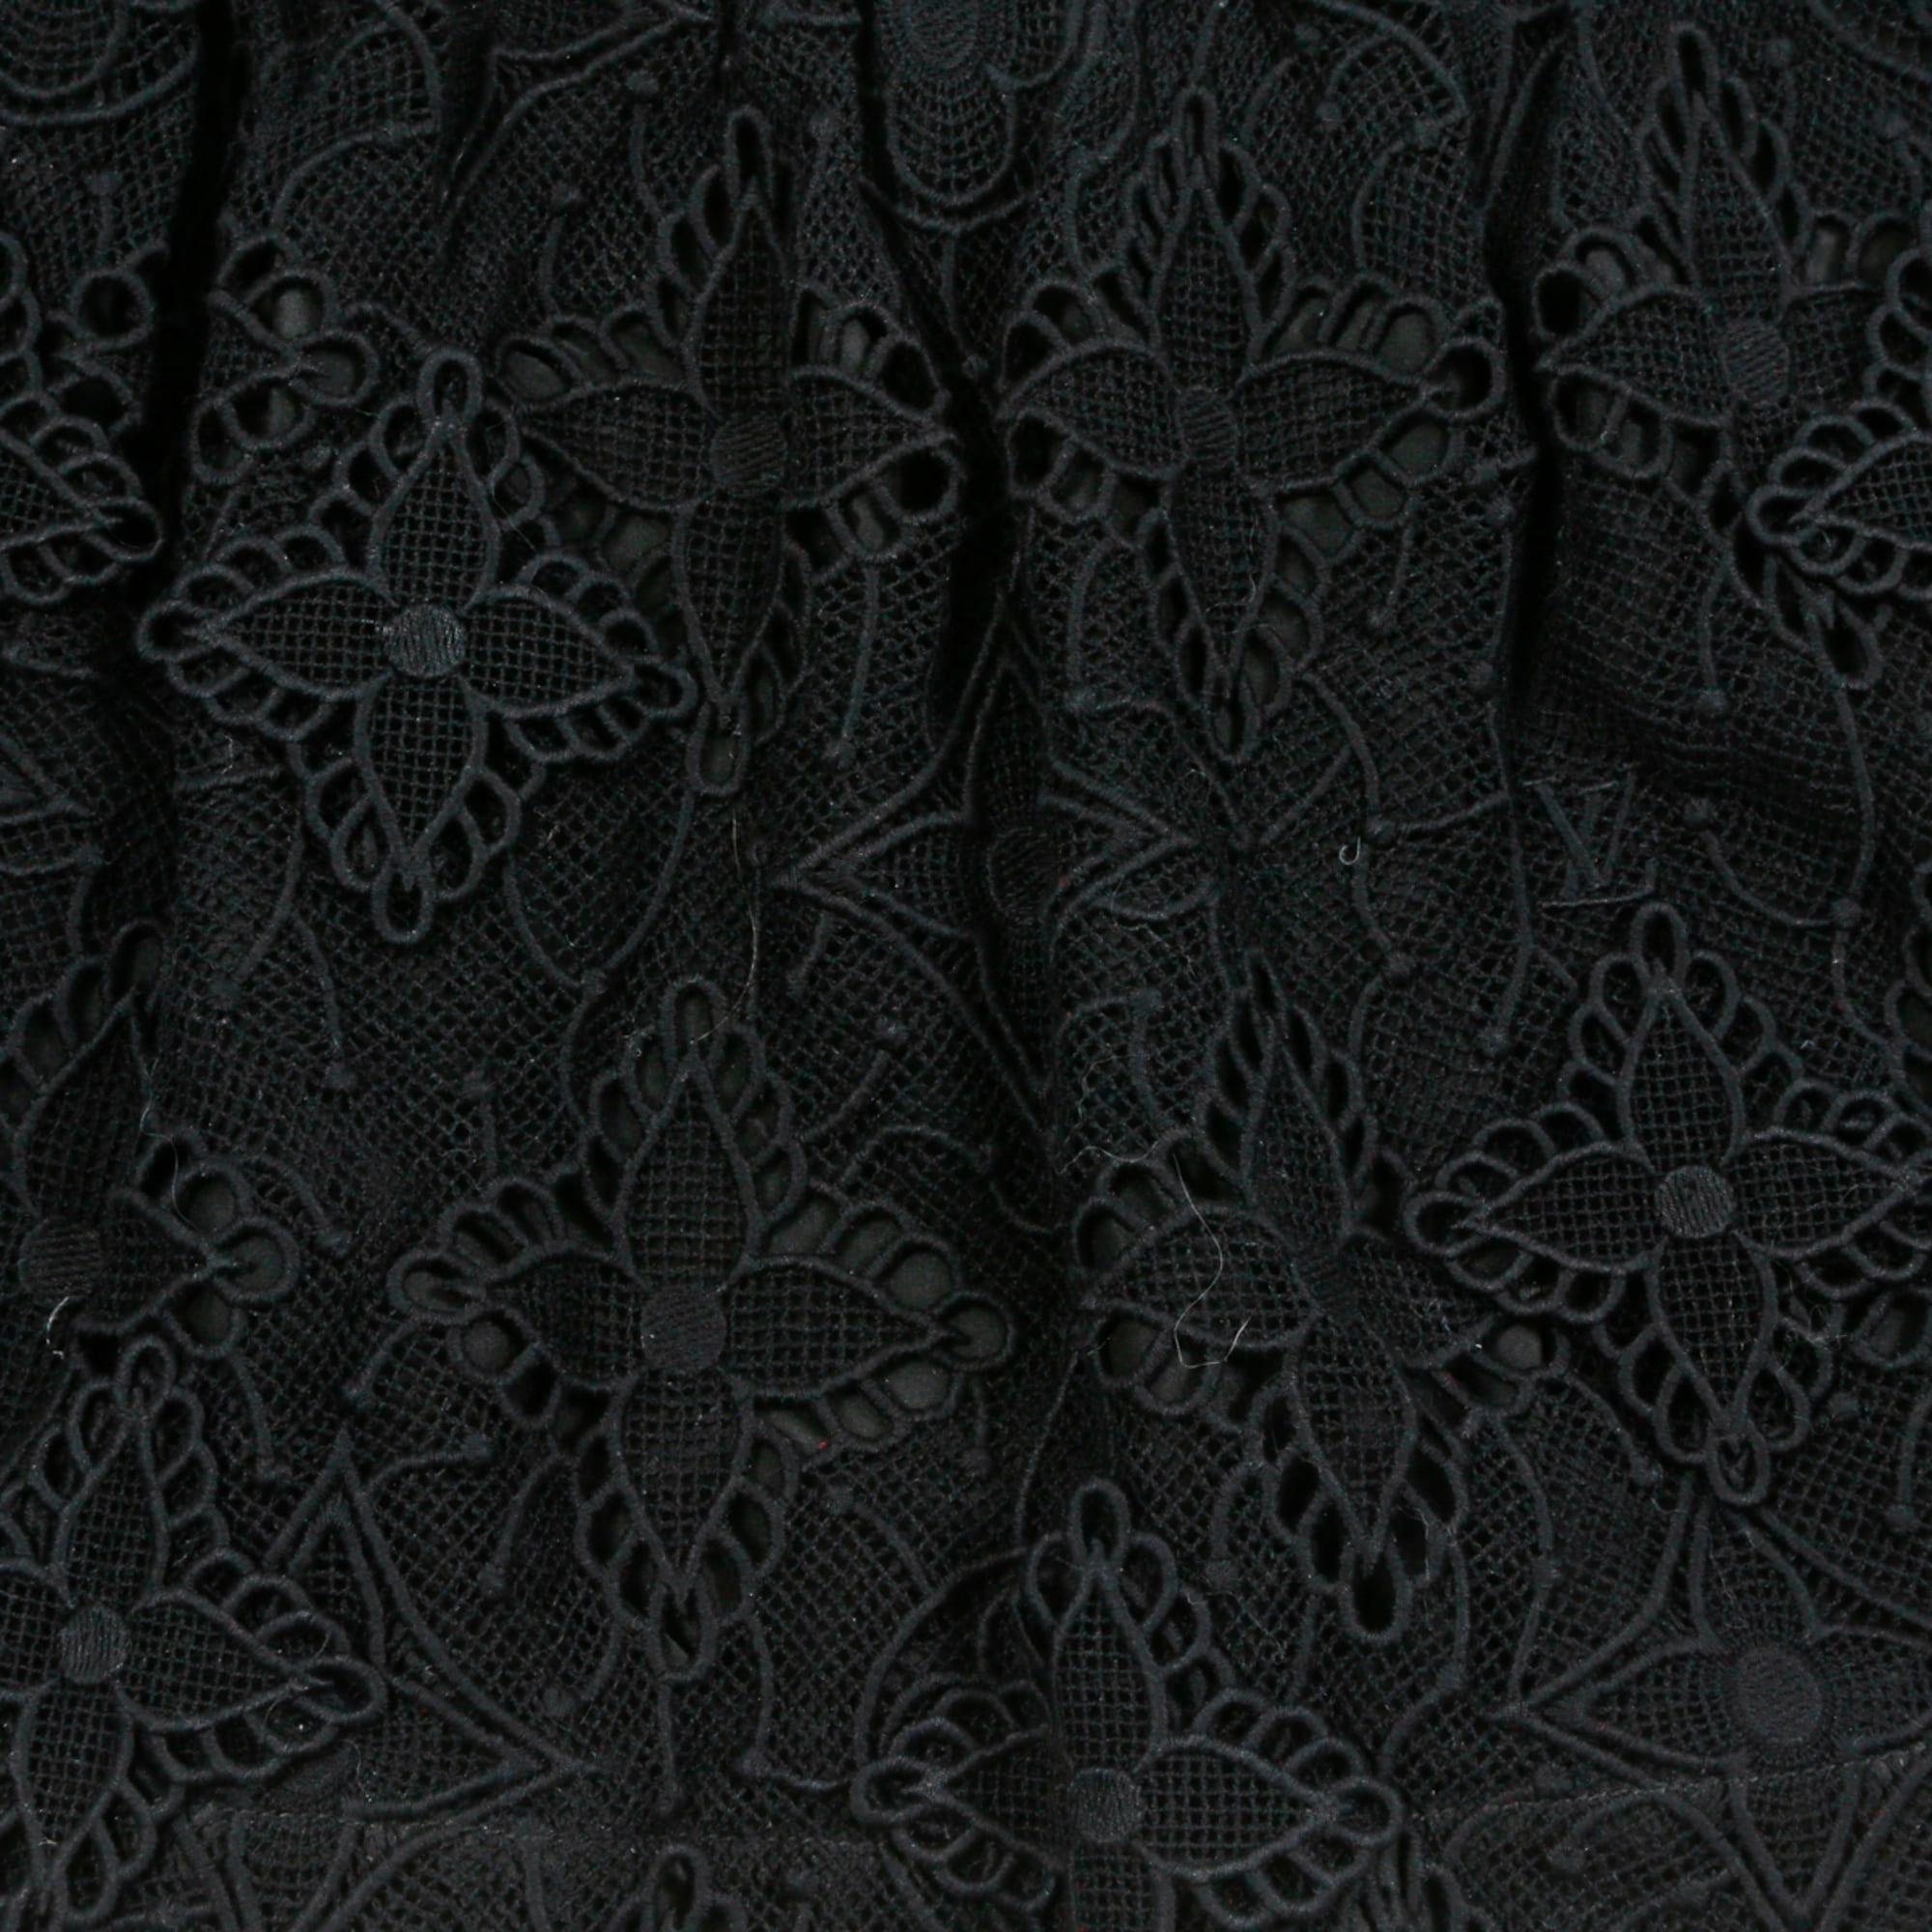 Jupe courte Louis Vuitton en guipure de coton noir avec les symboles iconiques de la marque sur le devant et en crêpe de soie noir au dos, doublure en toile de satin noir, taille légèrement élastiquée, fermeture zippée contrastante au dos. Taille